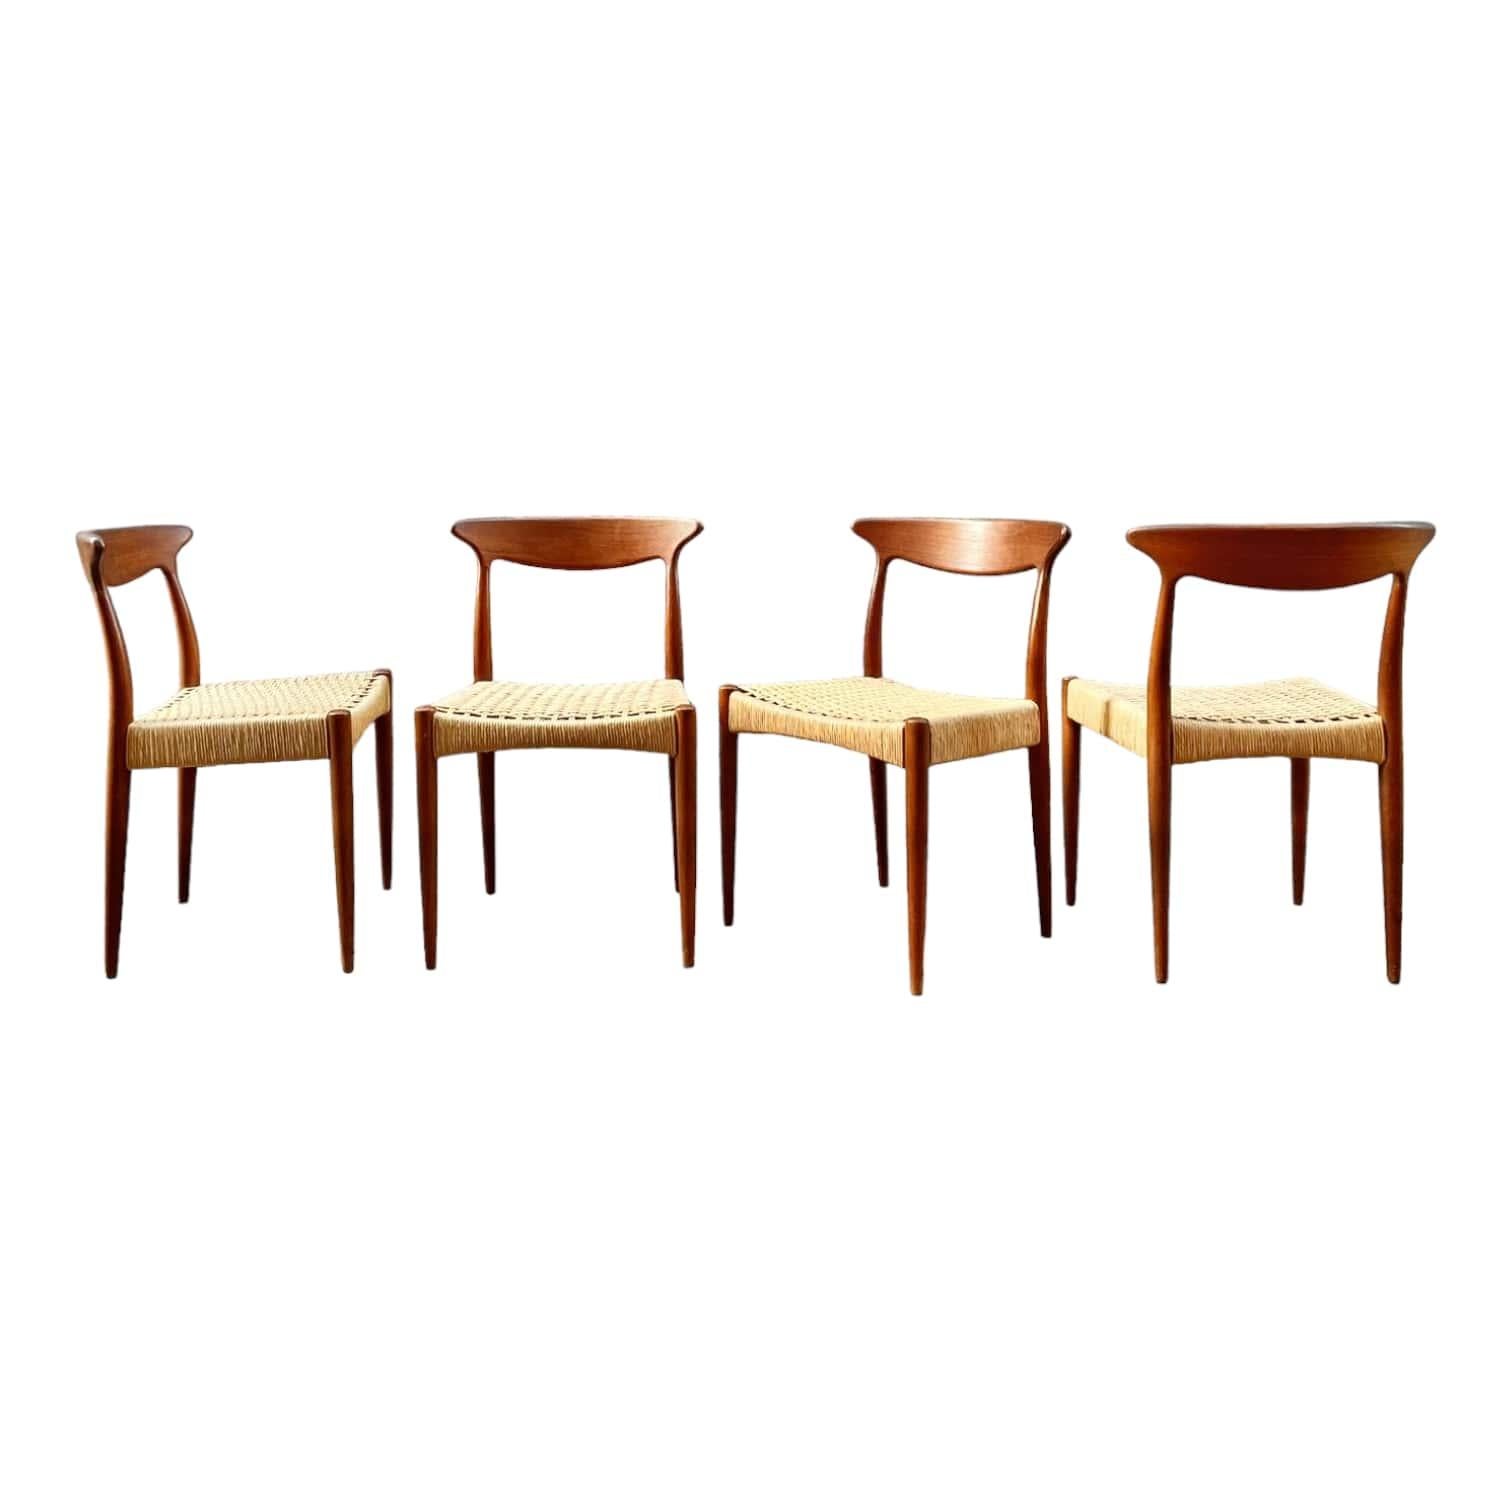 Entdecken Sie diese herrliche Serie von 4 dänischen Teakholzstühlen, die von Arne Hovmand Olsen entworfen wurden und aus den 1960er Jahren stammen. Diese Stühle sind echte dänische Antiquitäten, die einen Hauch von Charme und Eleganz in Ihr